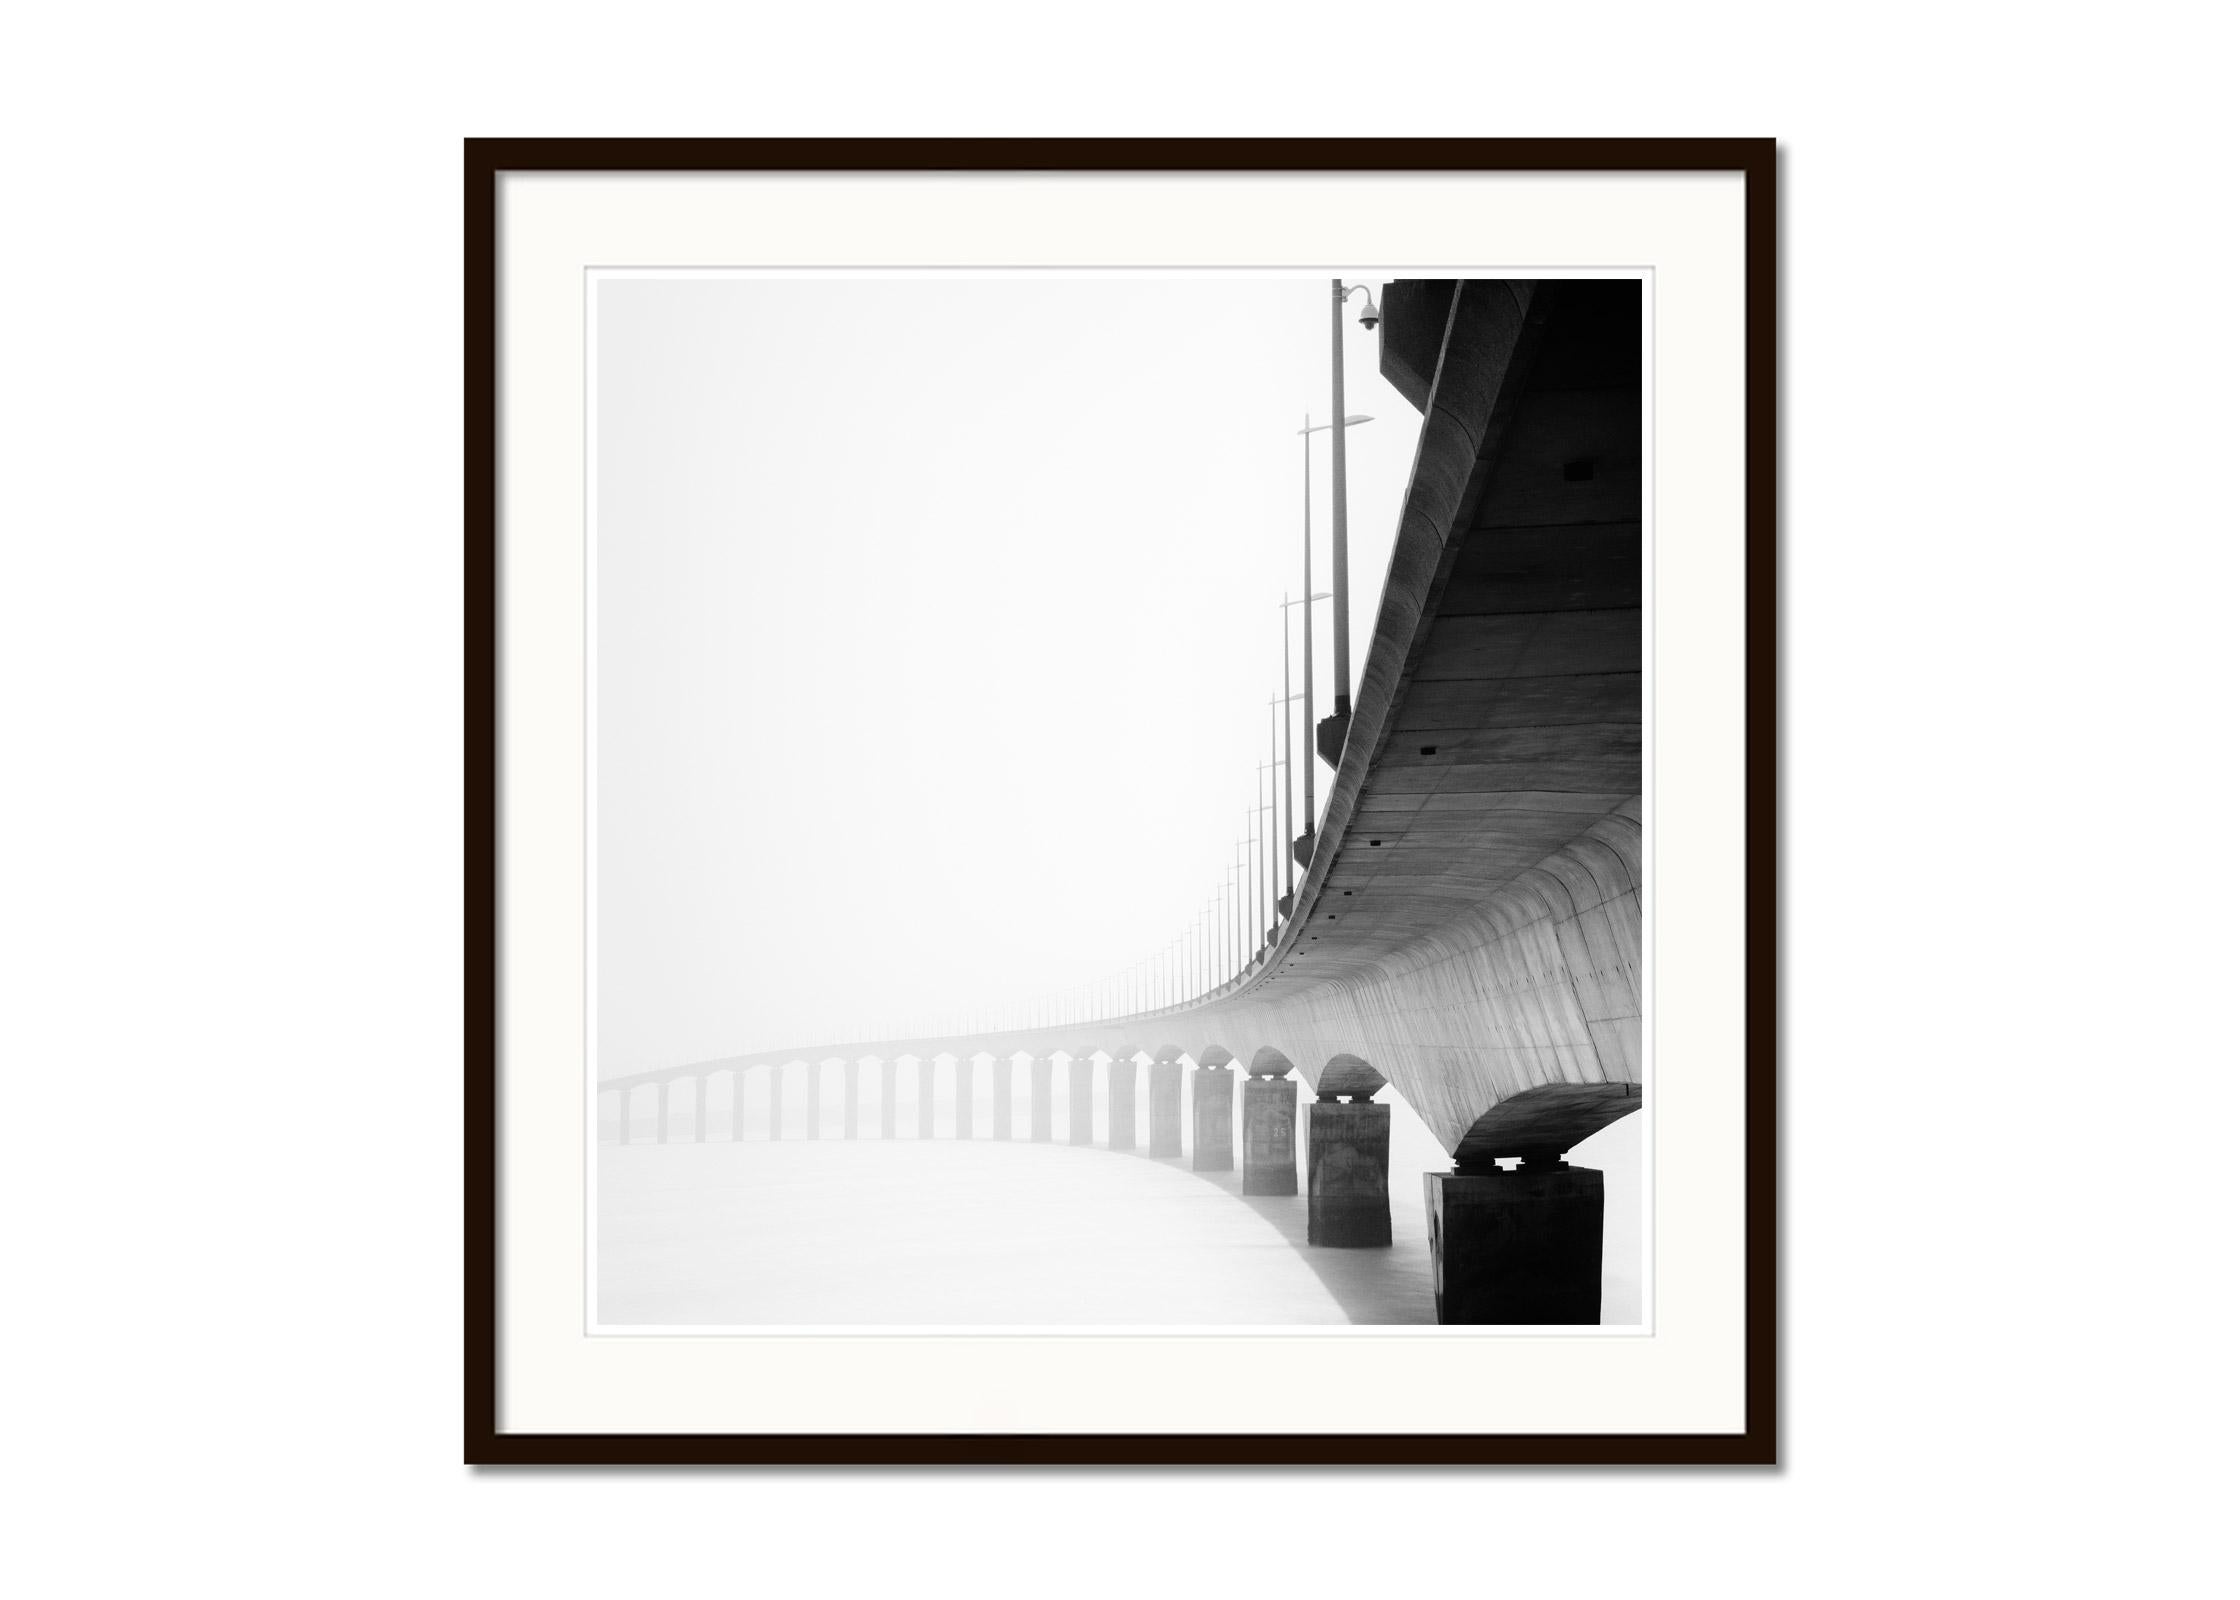 Le de Re Bridge, Architekturdetails, Frankreich, Schwarzweiß-Landschaftsfotografie (Grau), Landscape Photograph, von Gerald Berghammer